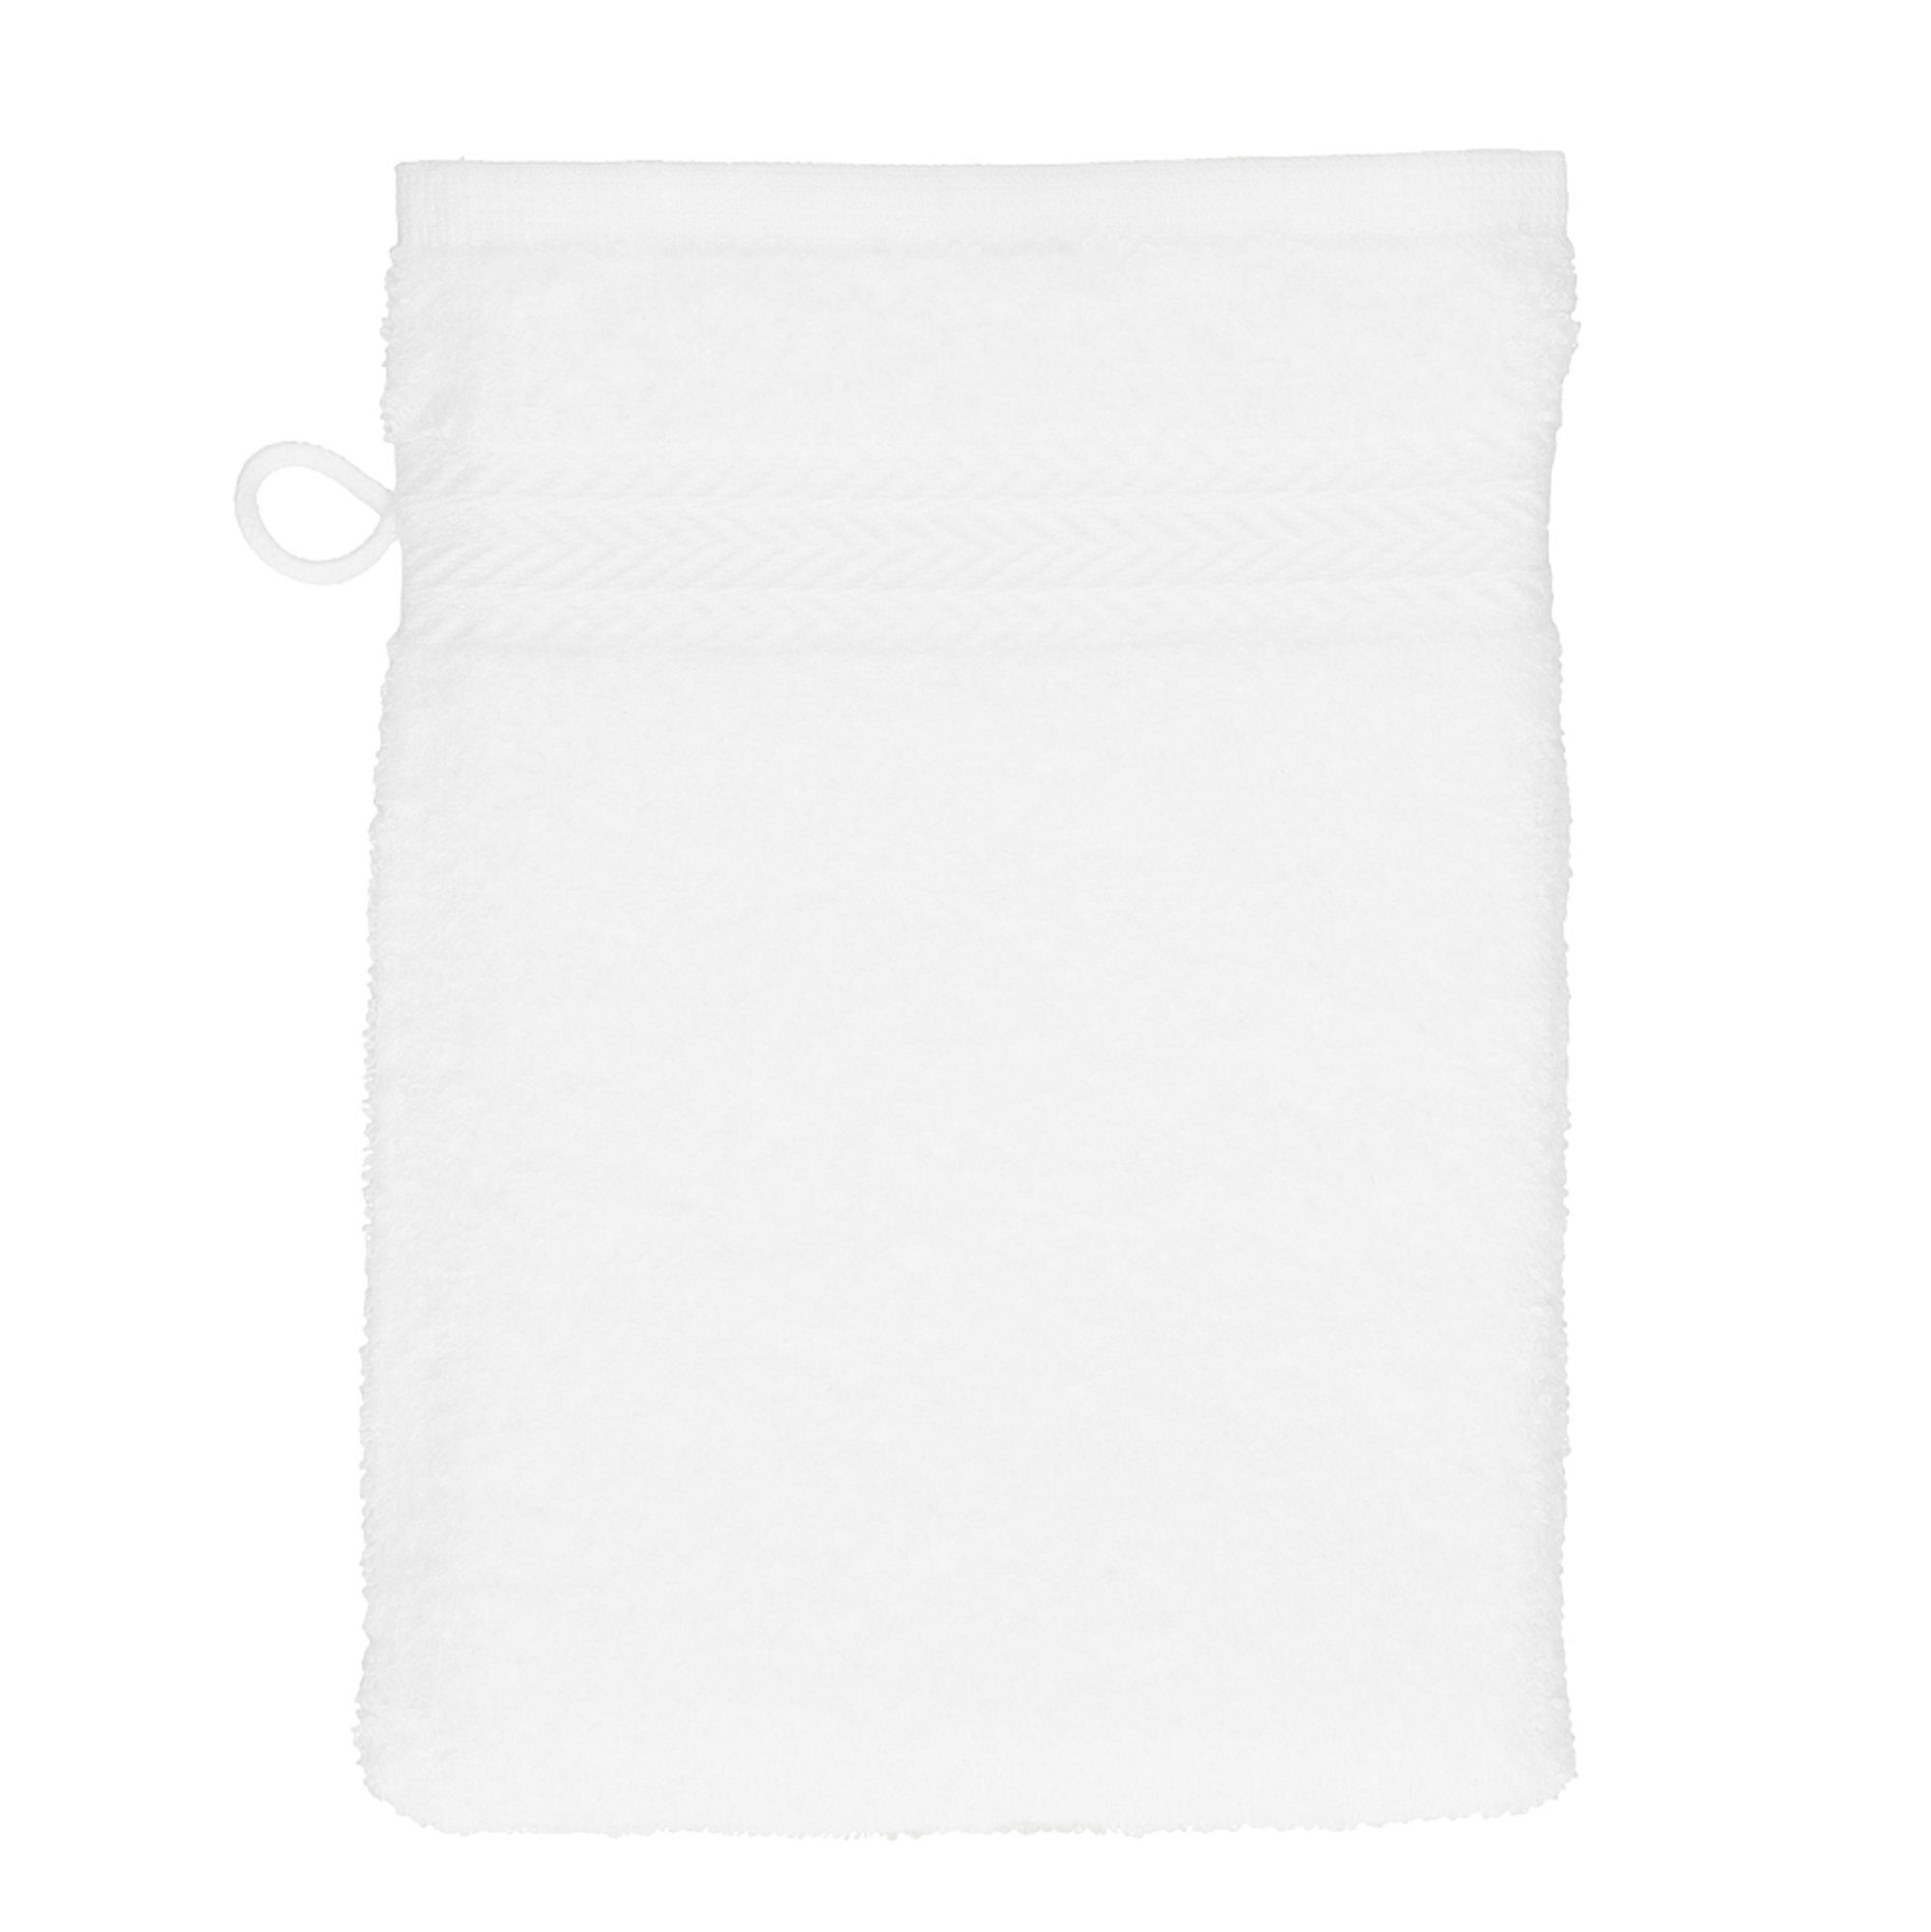 und Waschhandschuhe Baumwolle Betz schwarz 16x21 weiß Farbe 10 Stück Waschlappen Set 100% Waschhandschuh Premium cm